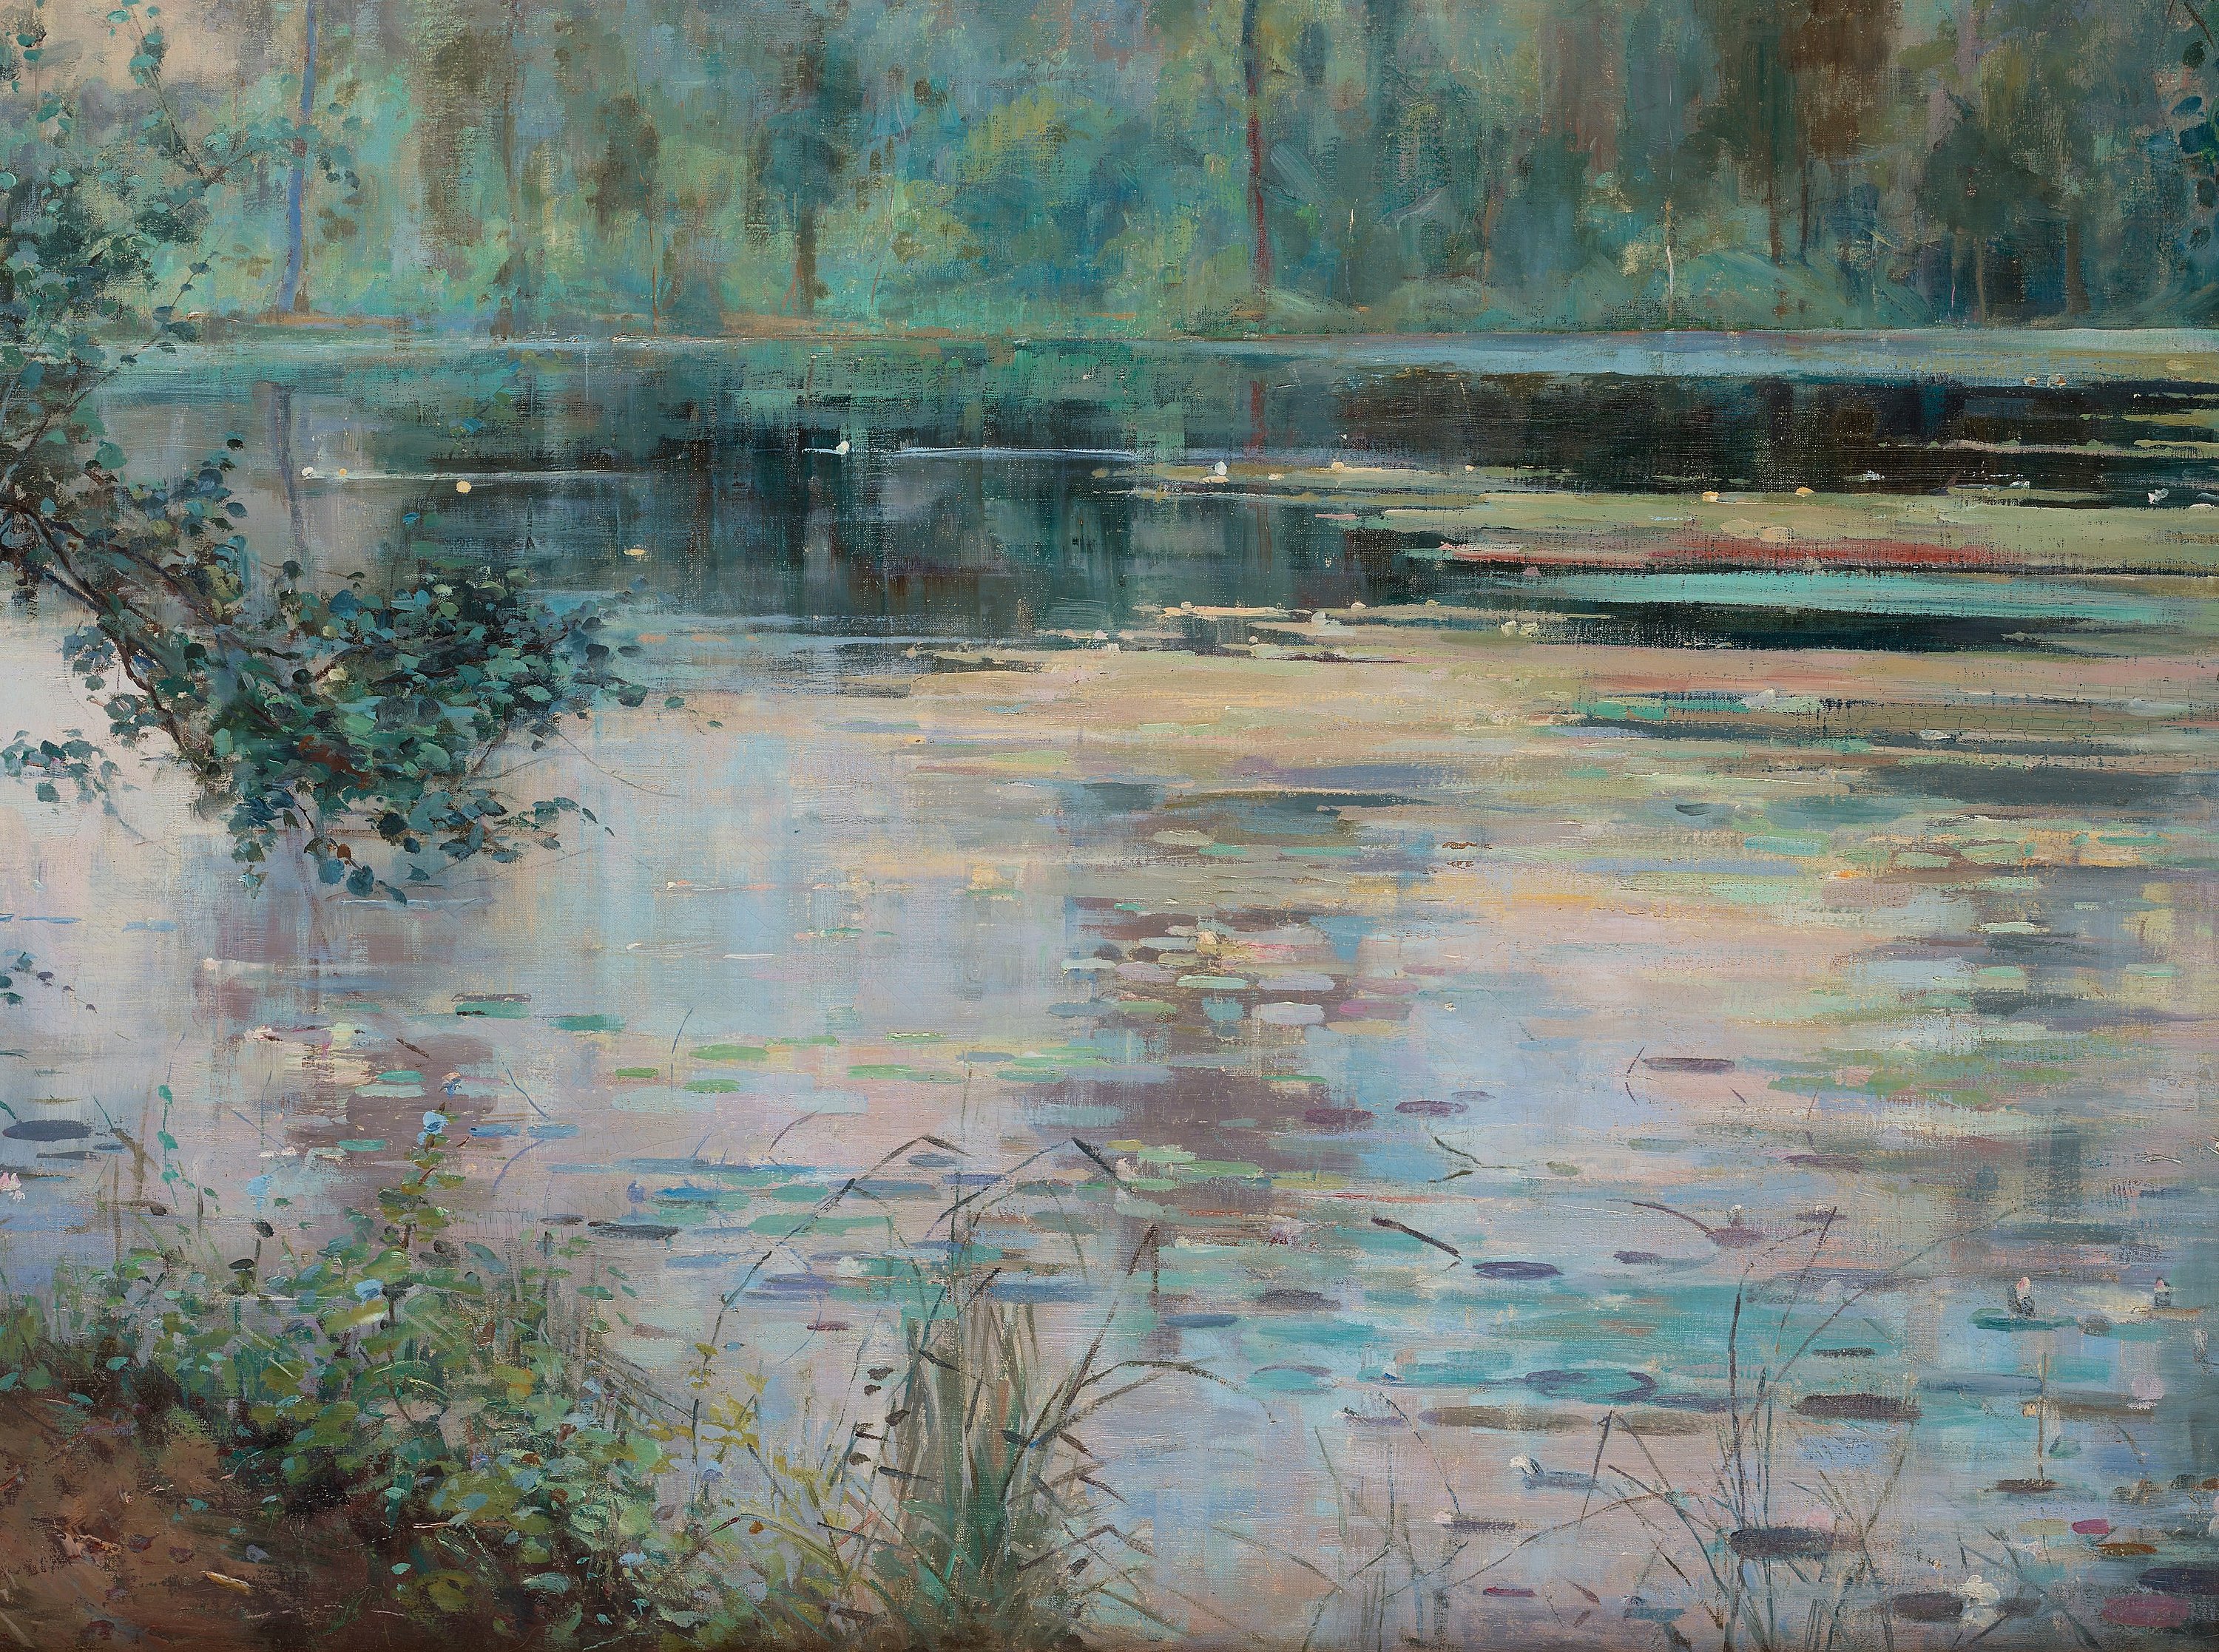 El estanque (neblina) by Julia Beck - c. 1900 - 76 x 107 cm Colección privada